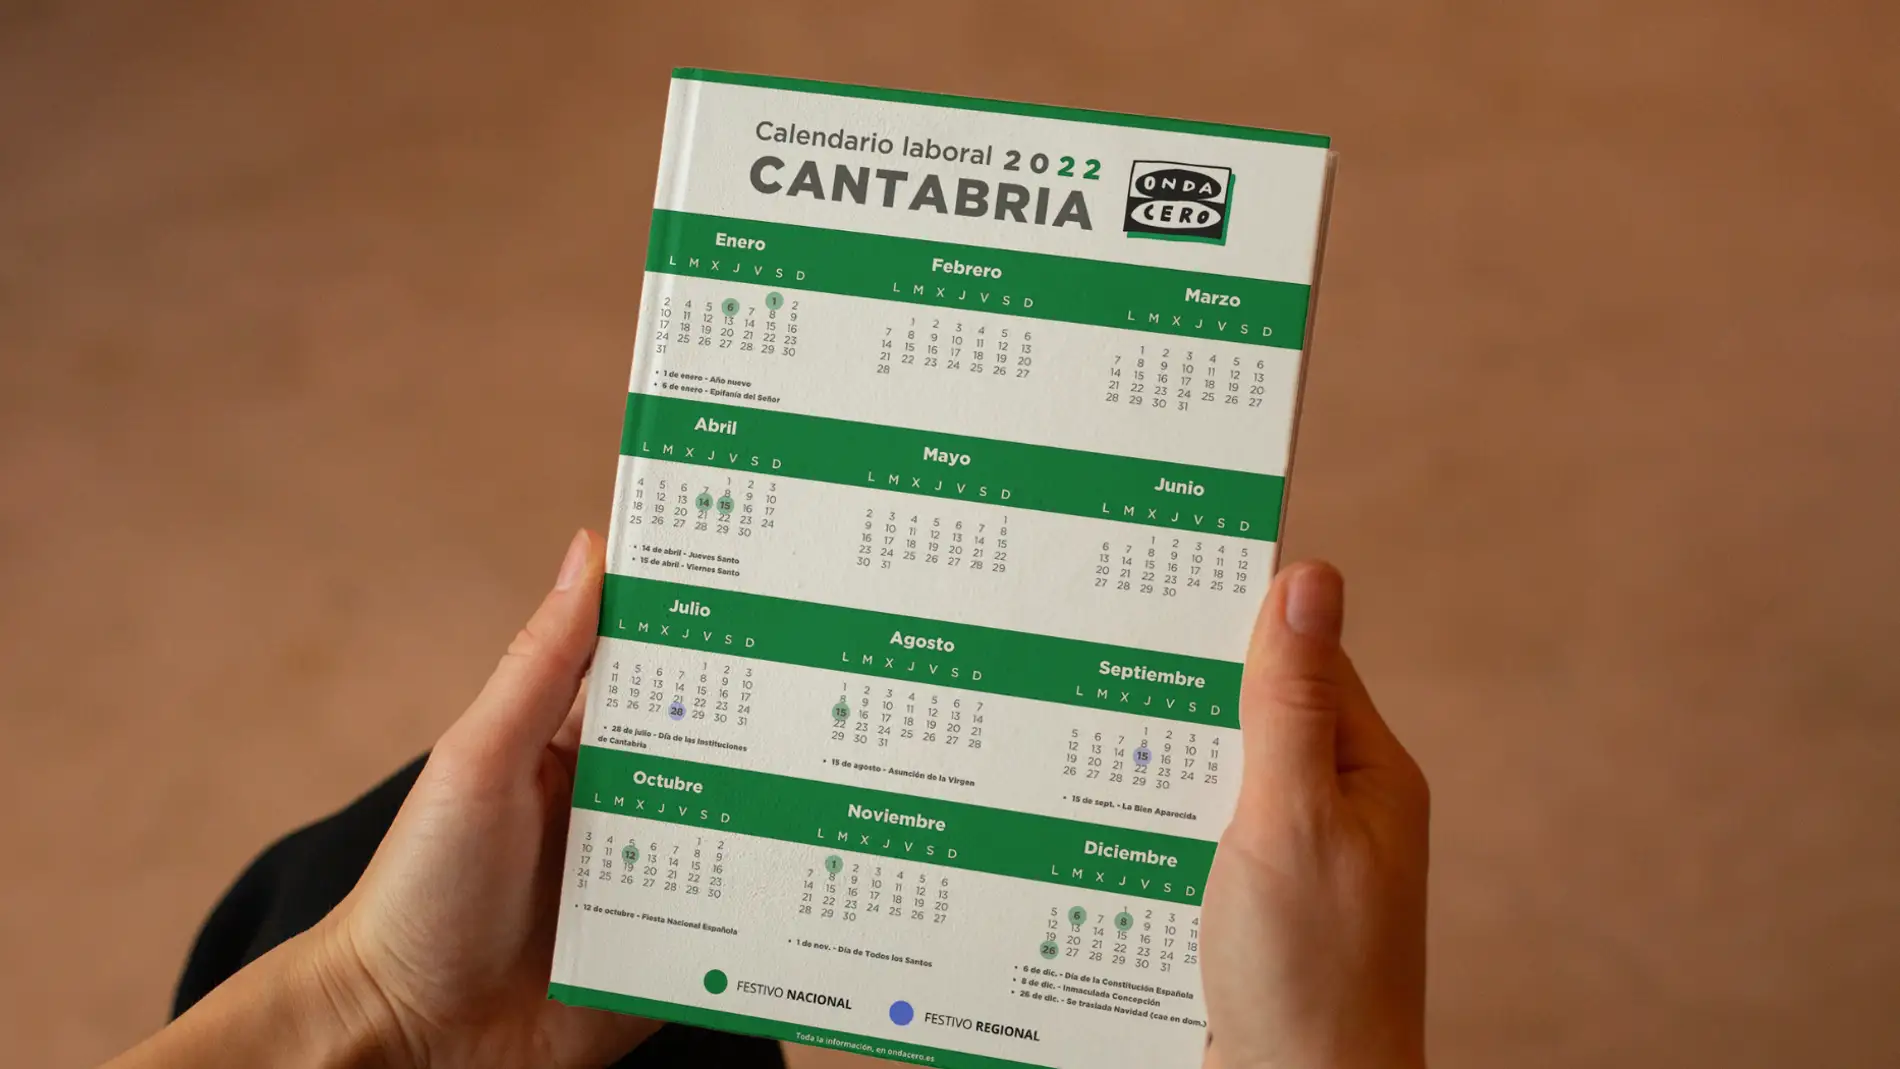 Calendario laboral de Cantabria para 2022